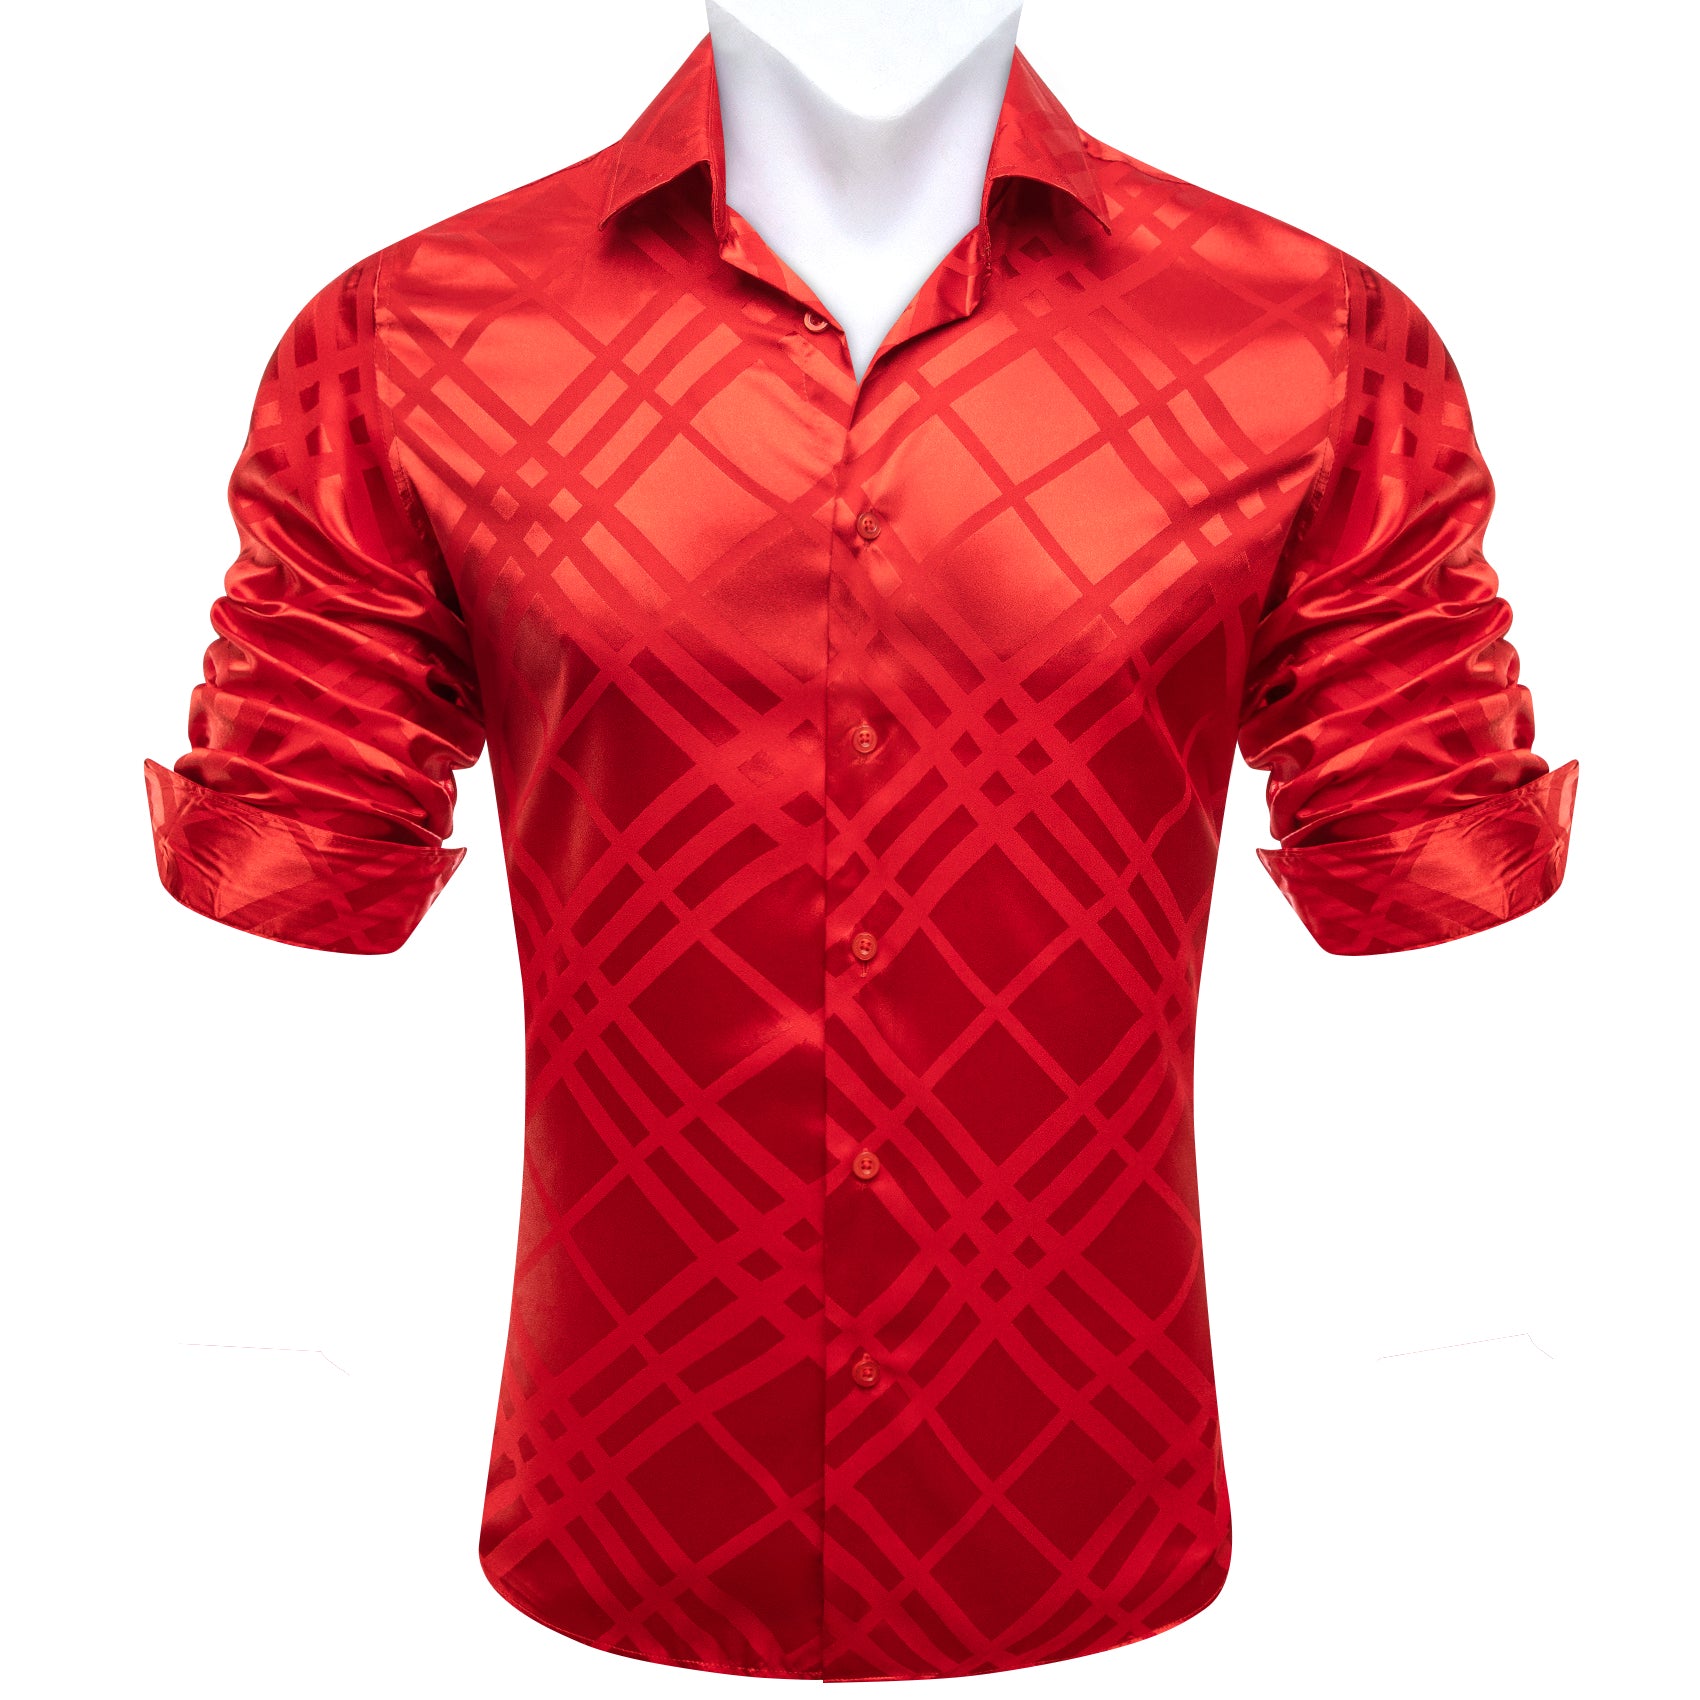 Barry.wang Red Striped Silk Men's Shirt